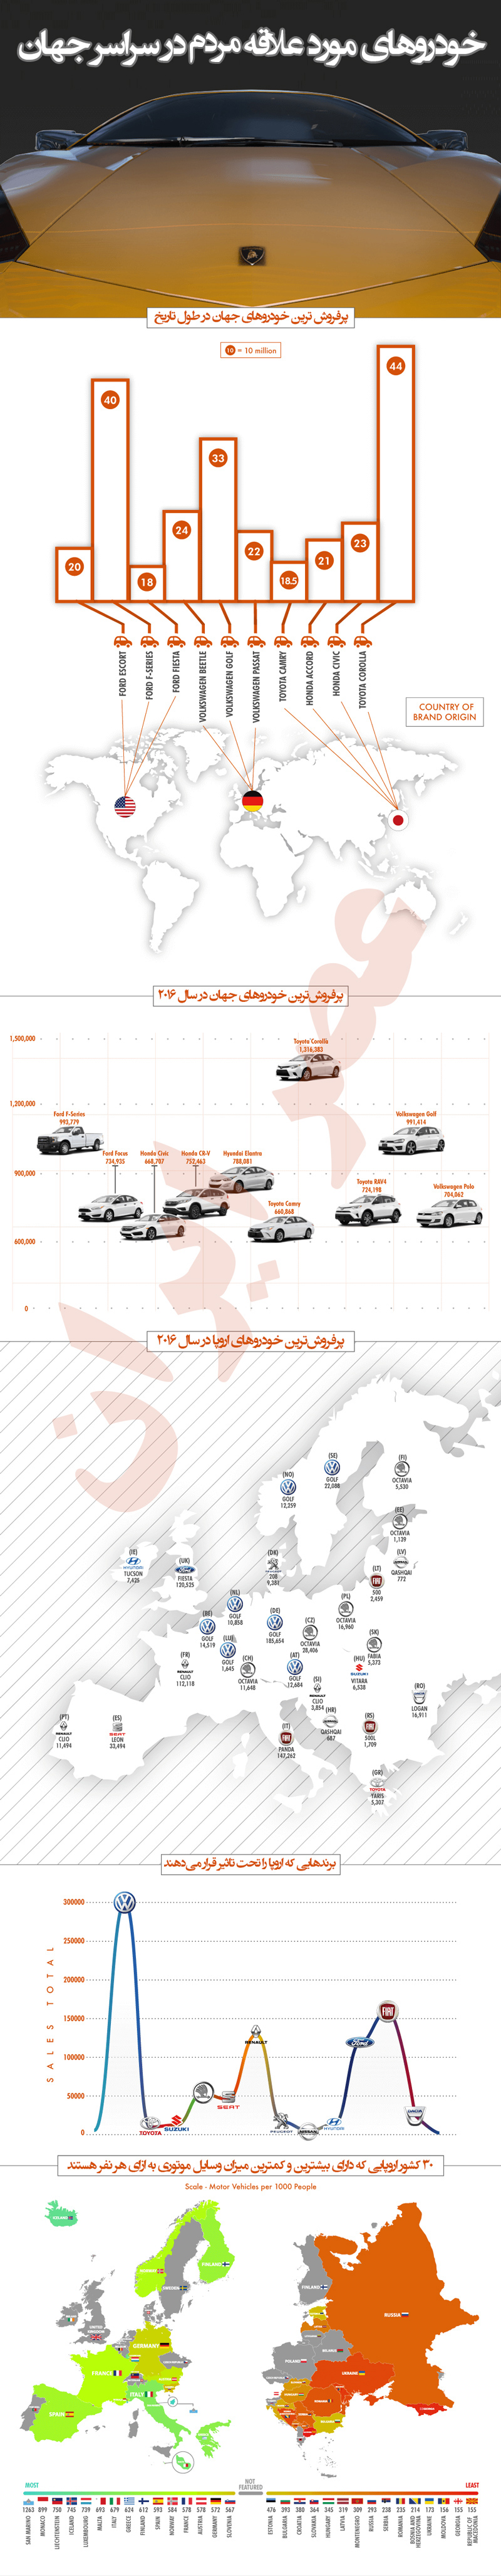 خودروهای مورد علاقه مردم در سراسر جهان (+اینفوگرافی)